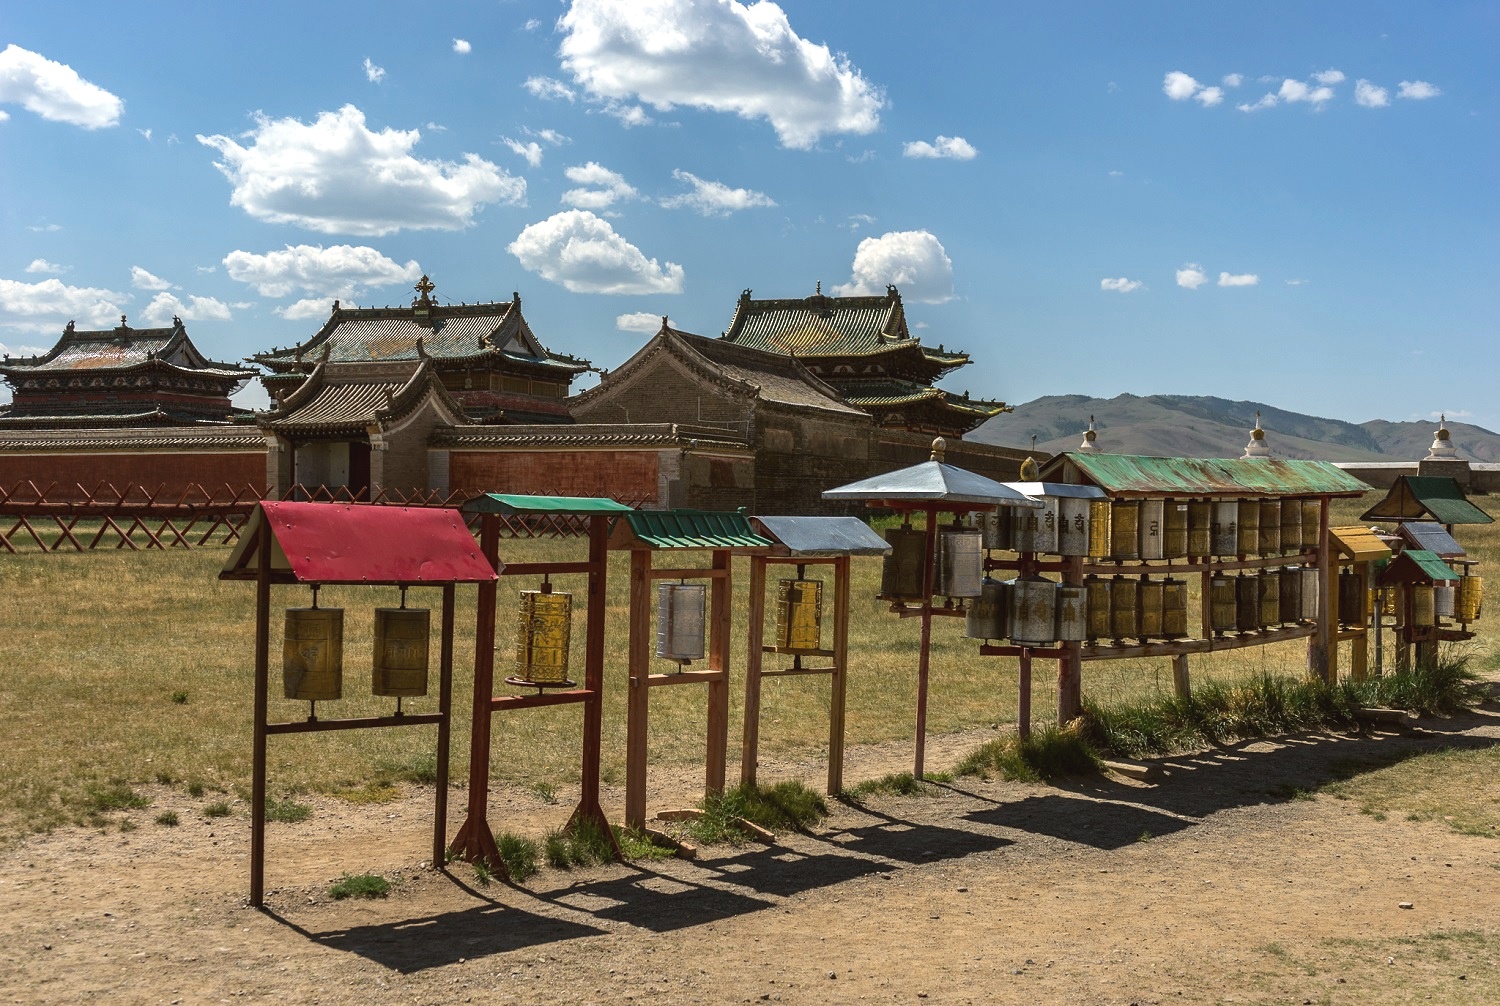 Erdenezuu monastery at Karakorum